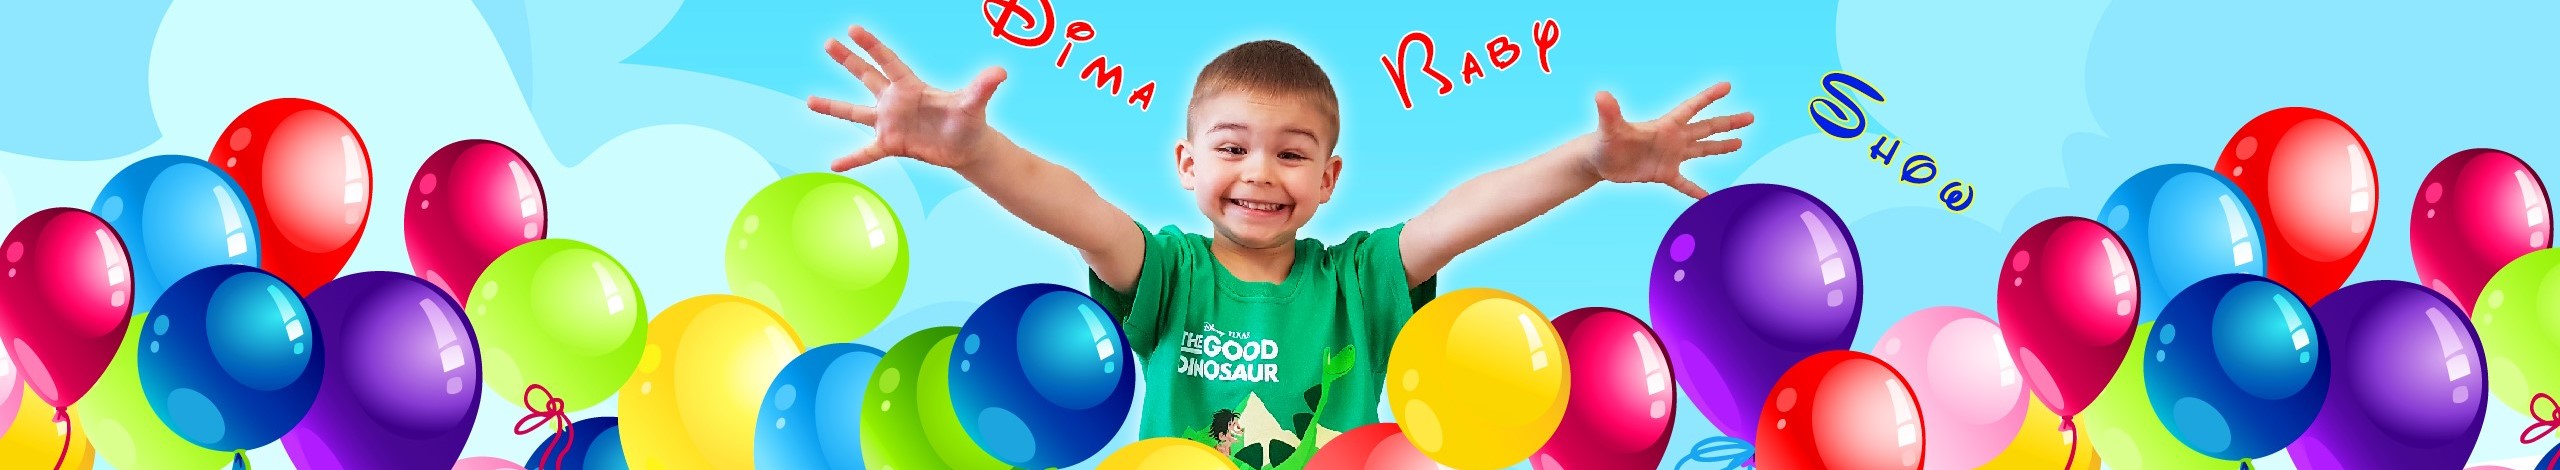 Dima-Kids-TV banner